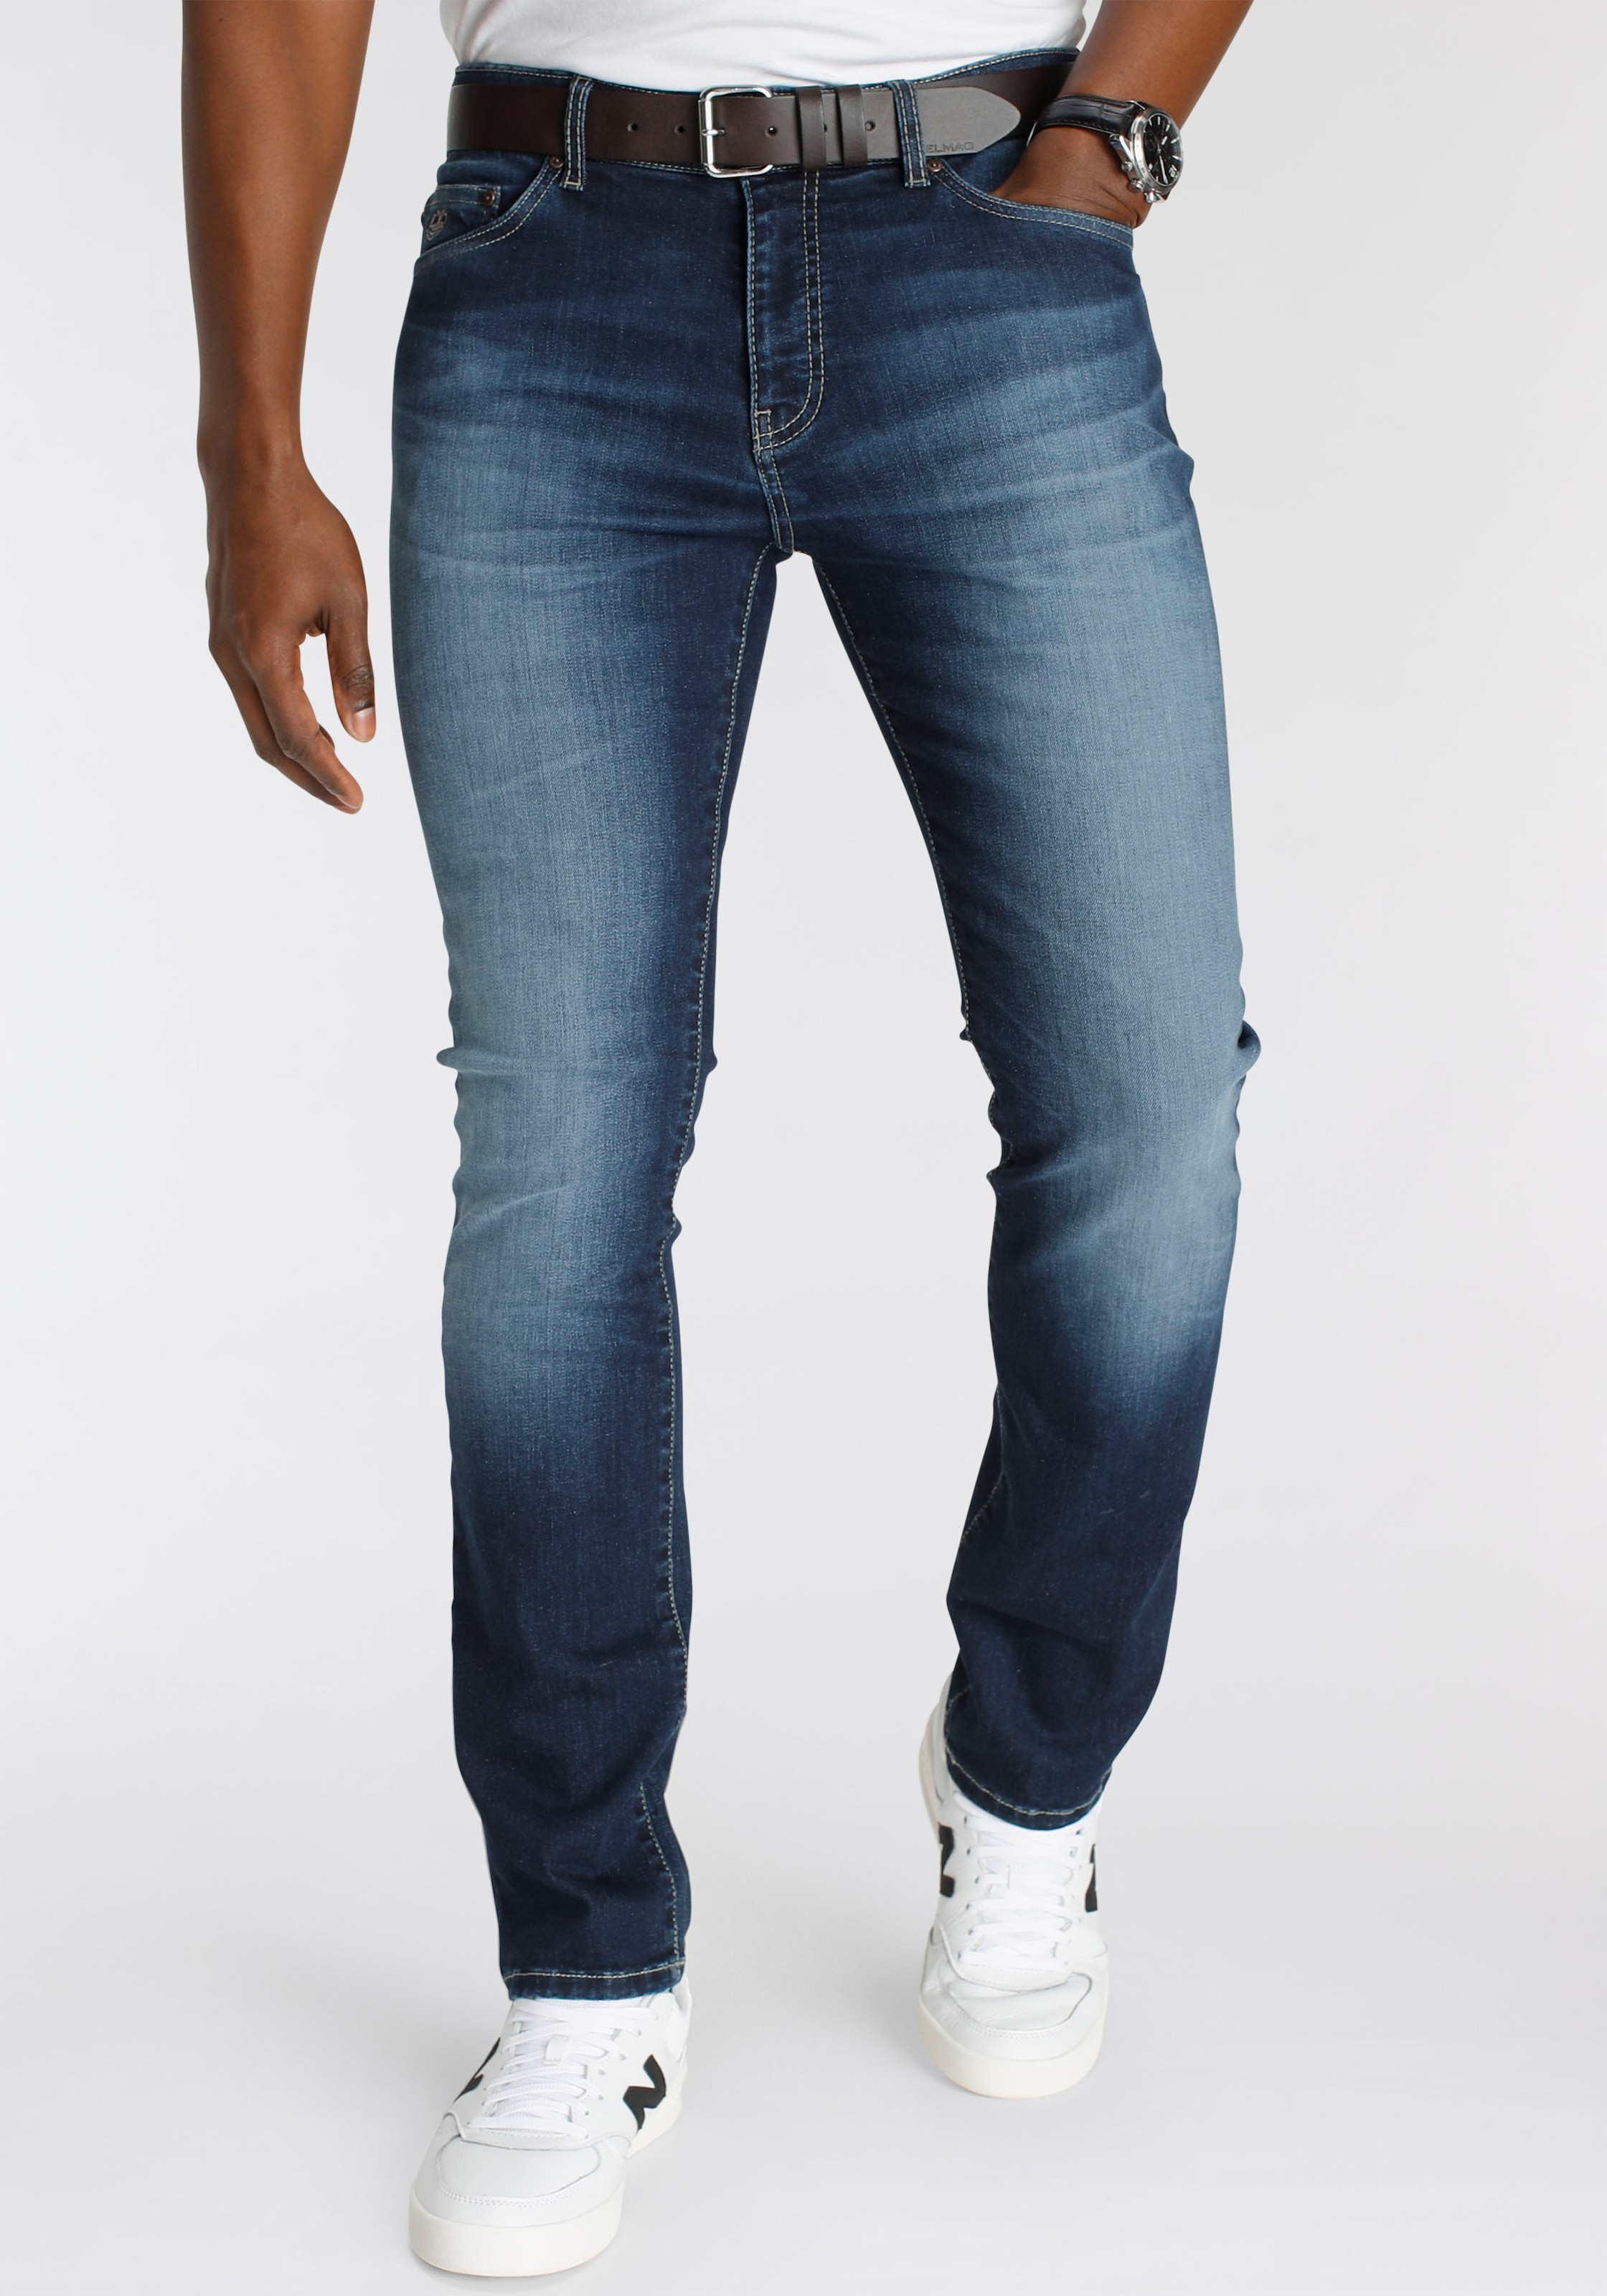 NEUE im mit - MARKE! DELMAO Stretch-Jeans schöner Online-Shop kaufen »\